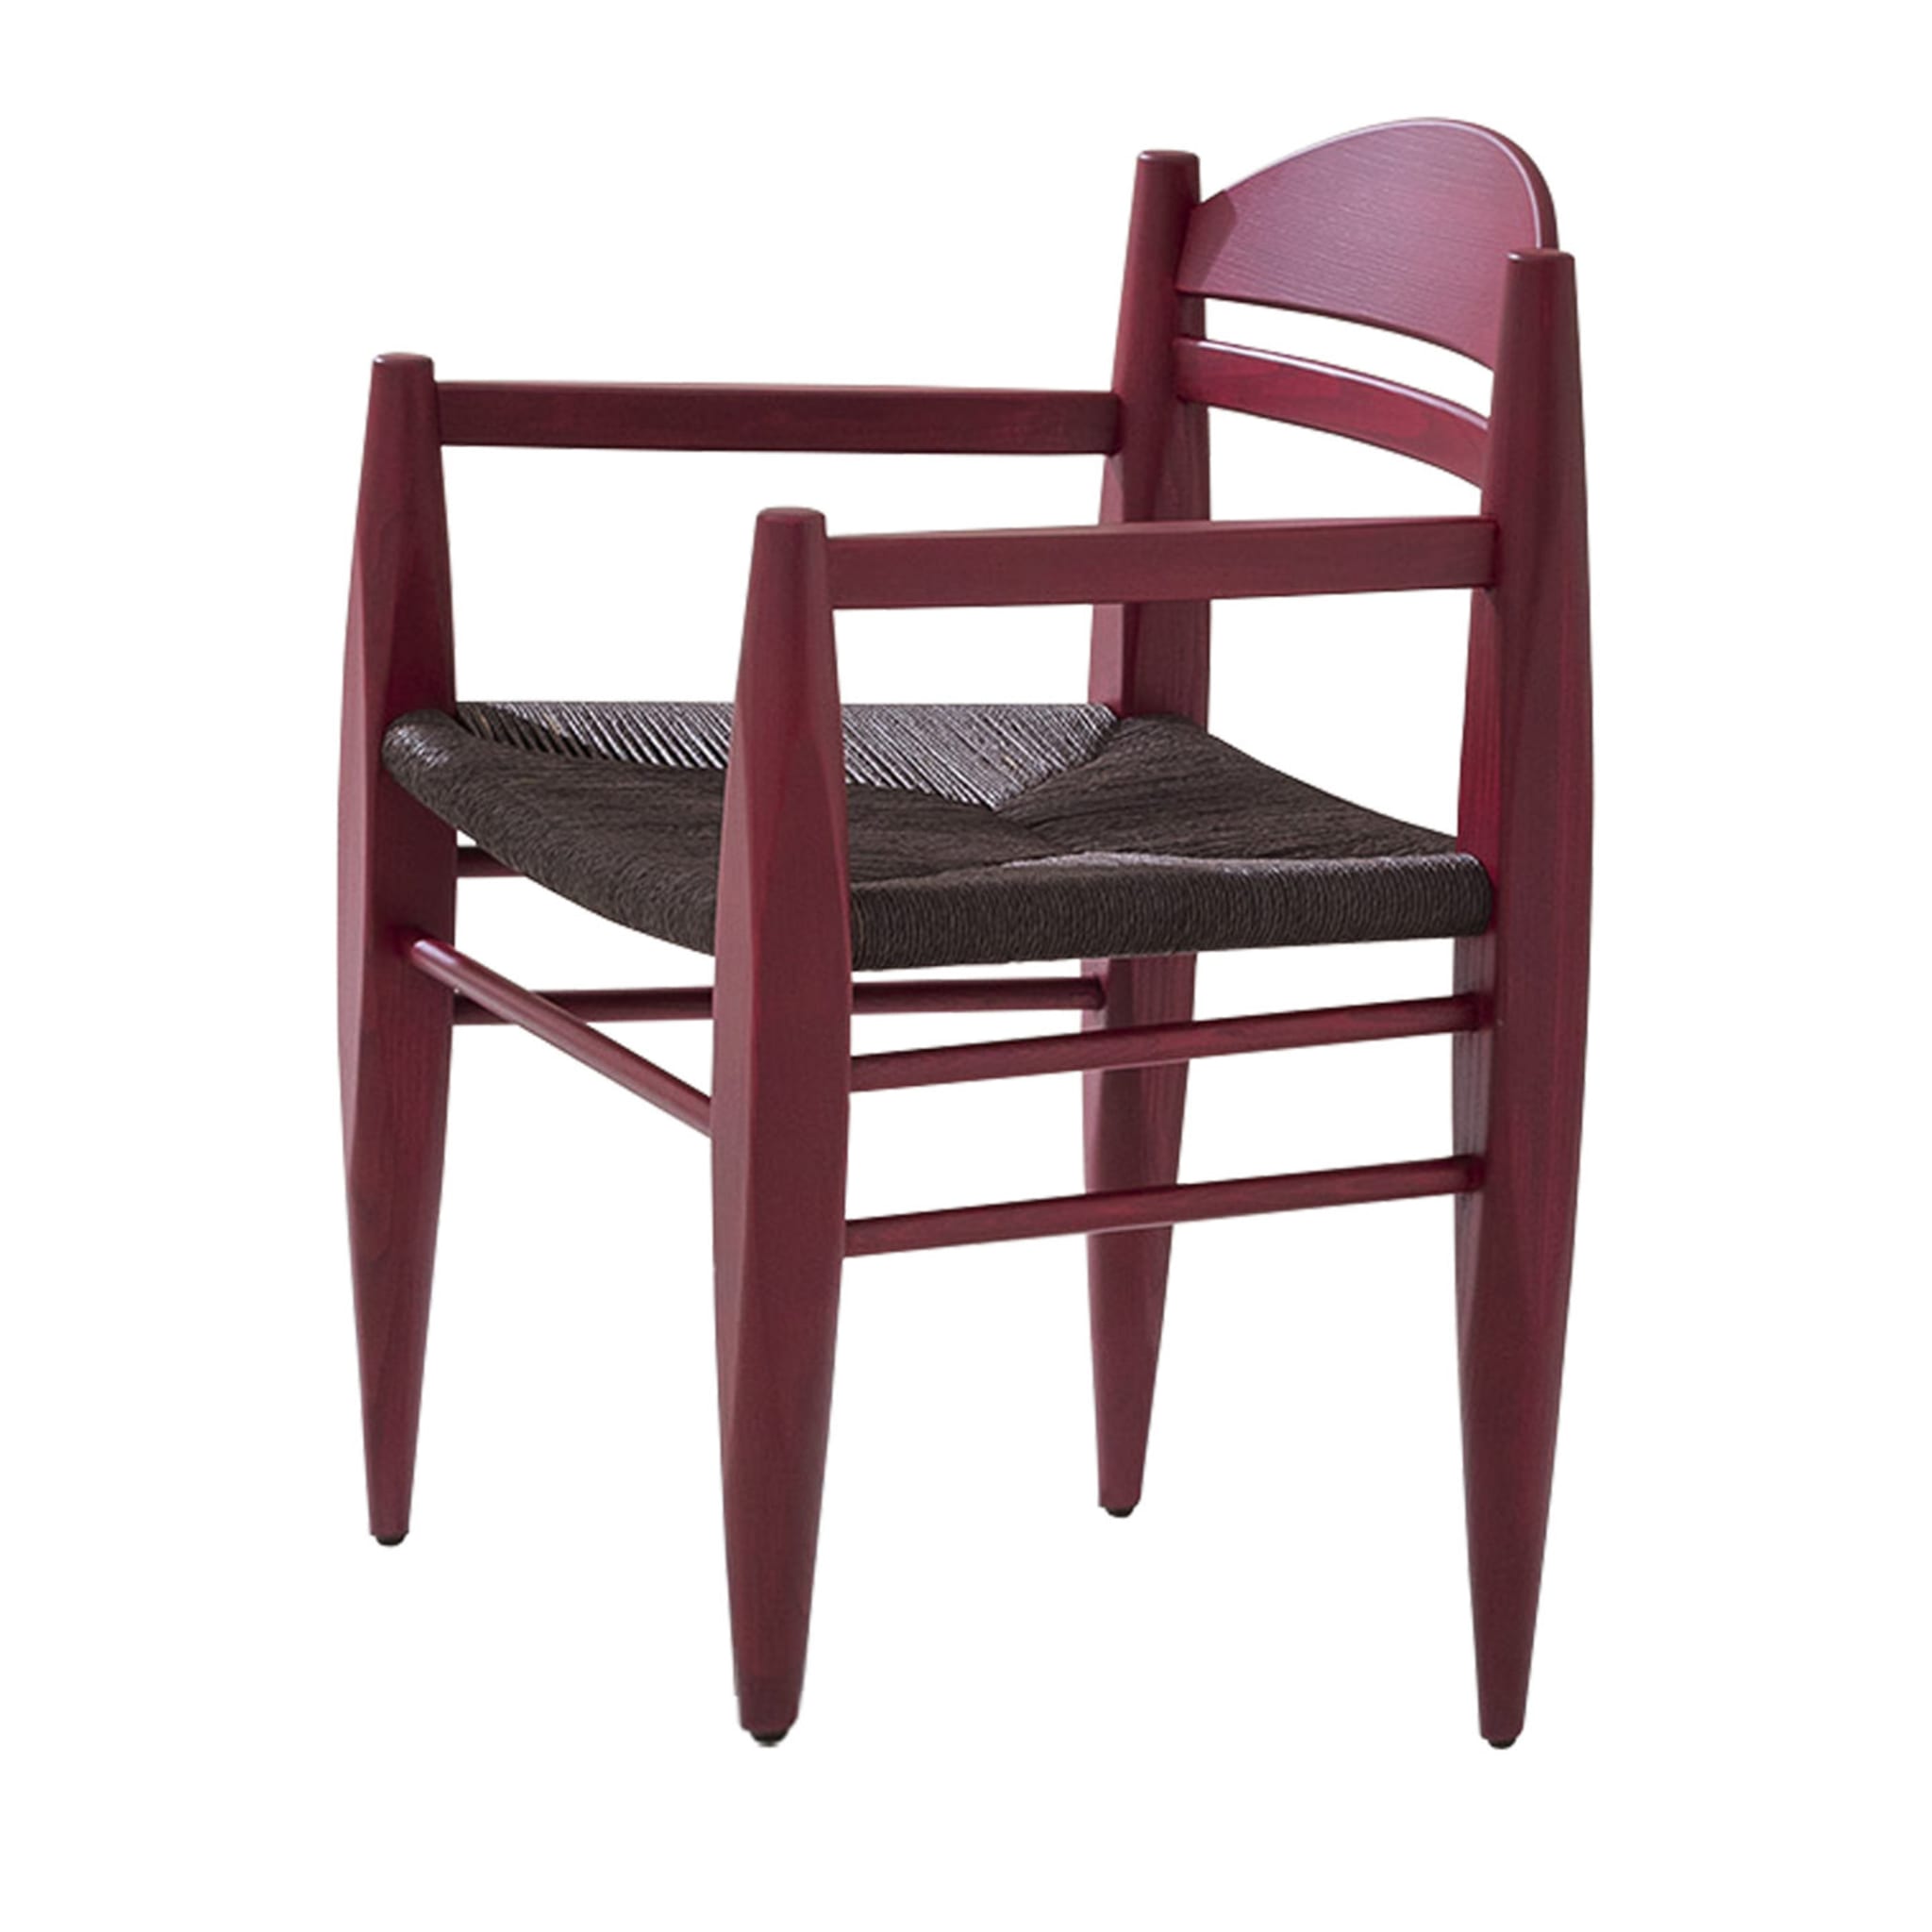 Vincent 441 Roter Stuhl von Werther Toffoloni - Hauptansicht